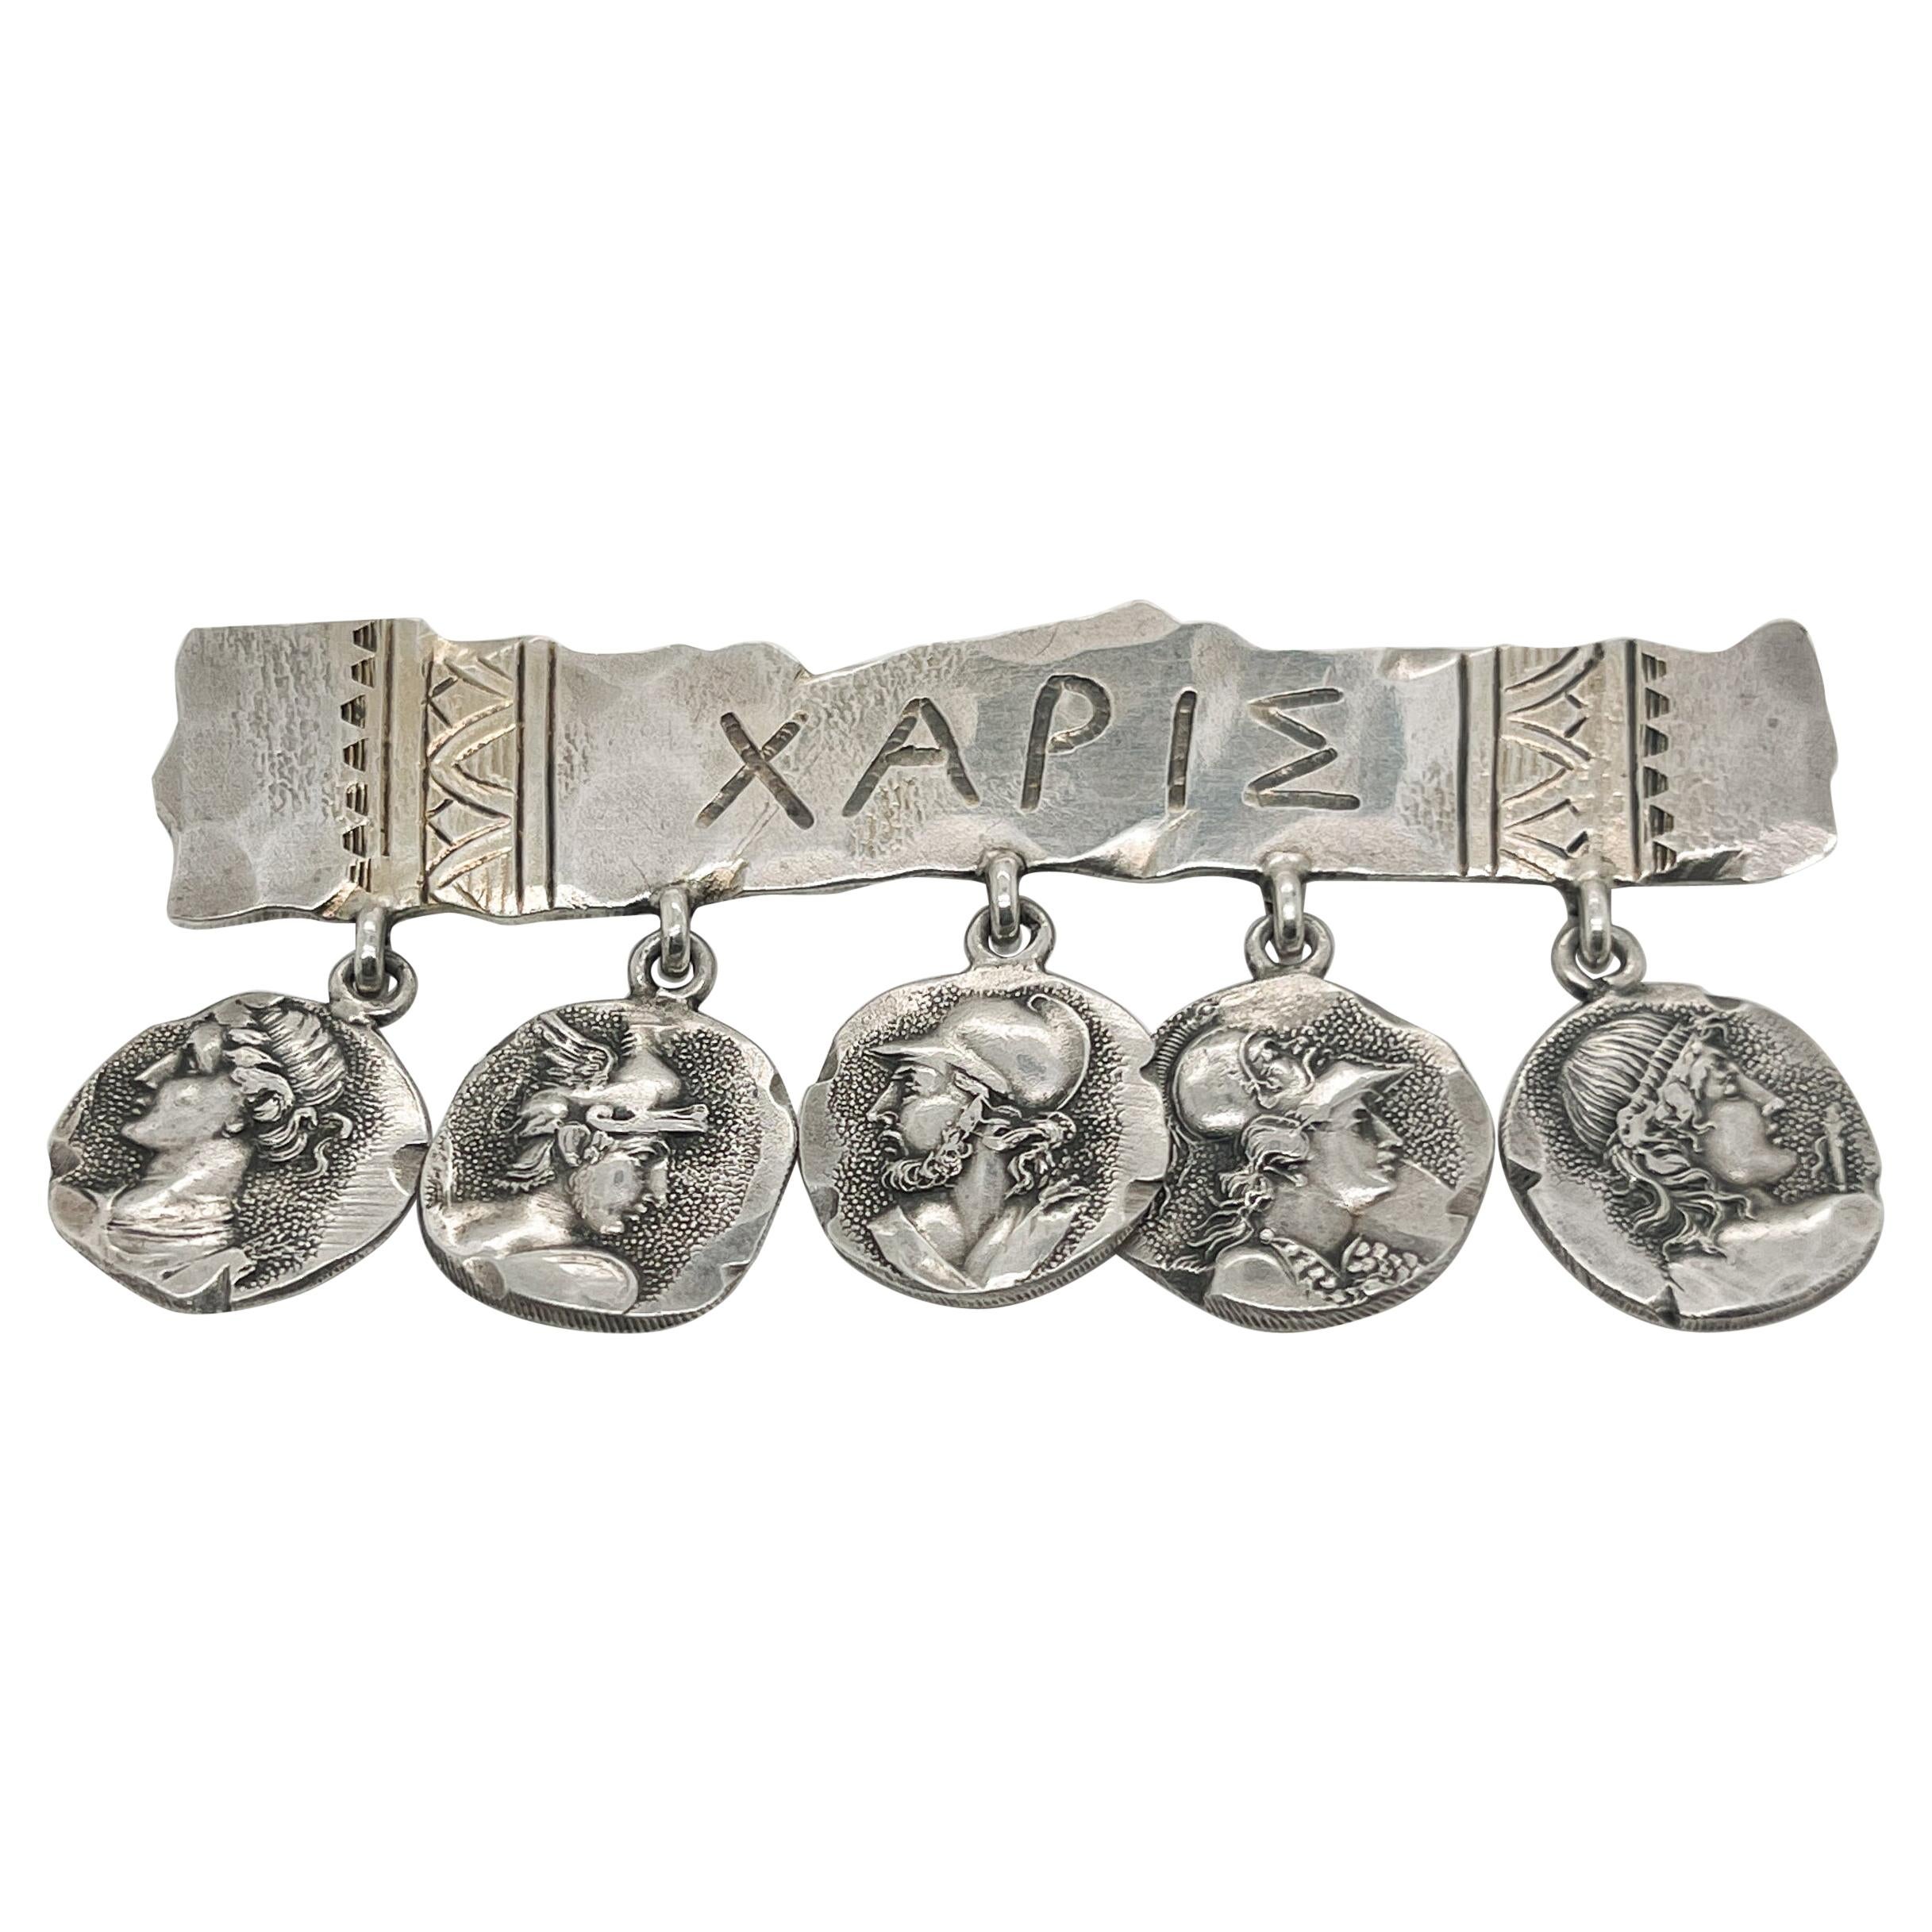 Antique George Shiebler Sterling Silver Etruscan or Medallion Brooch